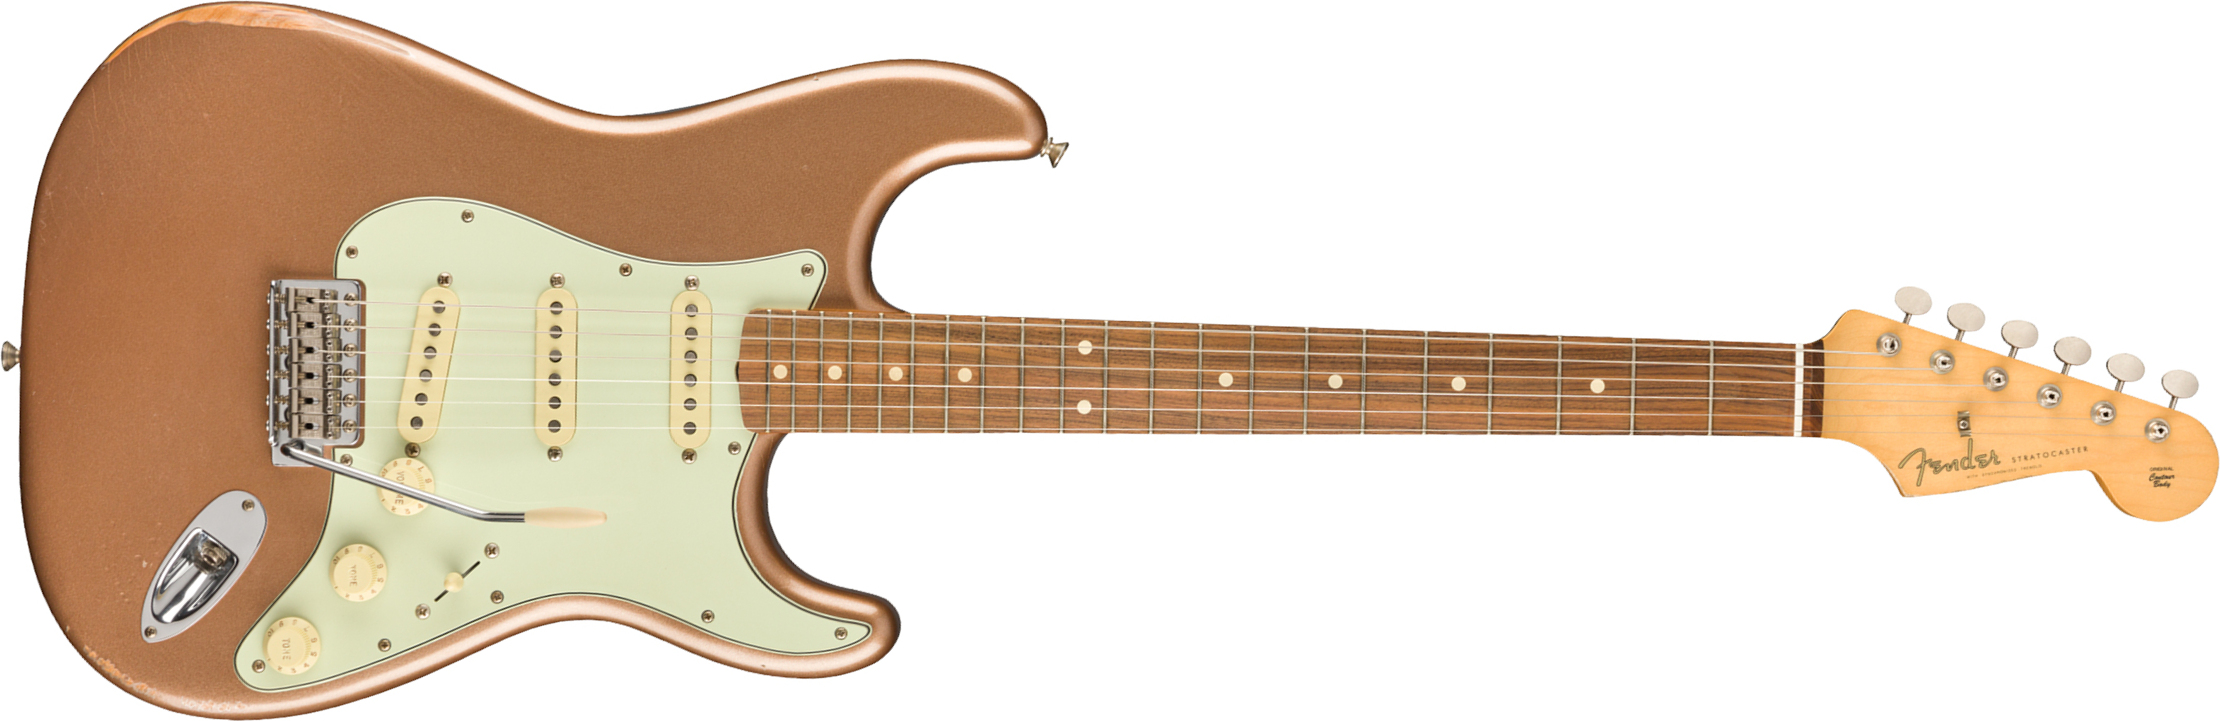 Fender Strat 60s Road Worn Mex Pf - Firemist Gold - Guitare Électrique Forme Str - Main picture